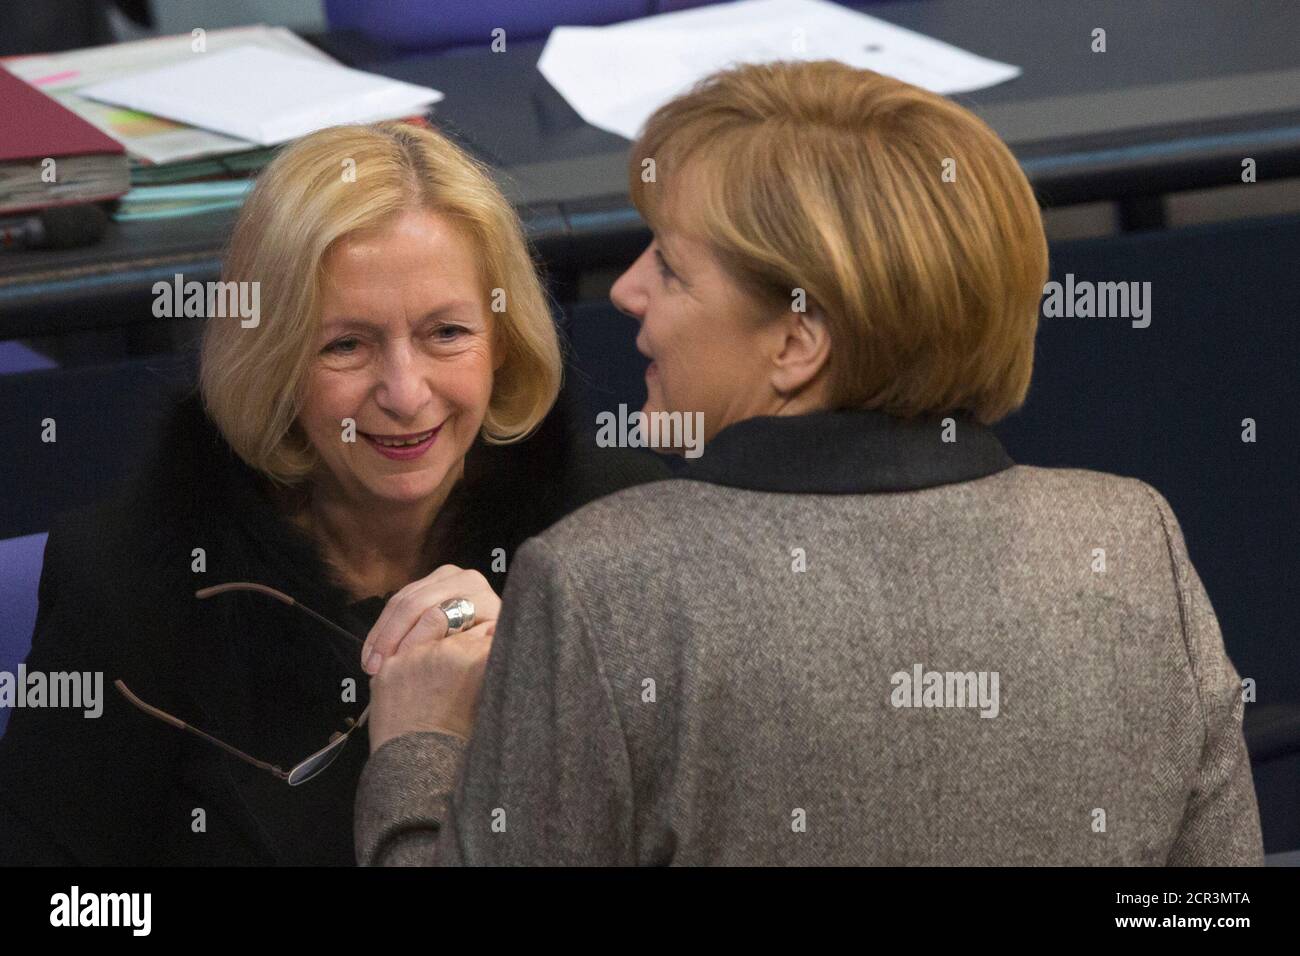 La chancelière allemande Angela Merkel (R) s'entretient avec le nouveau ministre de l'éducation Johanna Wanka lors d'une session du Bundestag, la chambre basse du Parlement à Berlin le 21 février 2013. REUTERS/Thomas Peter (ALLEMAGNE - Tags: POLITIQUE) Banque D'Images